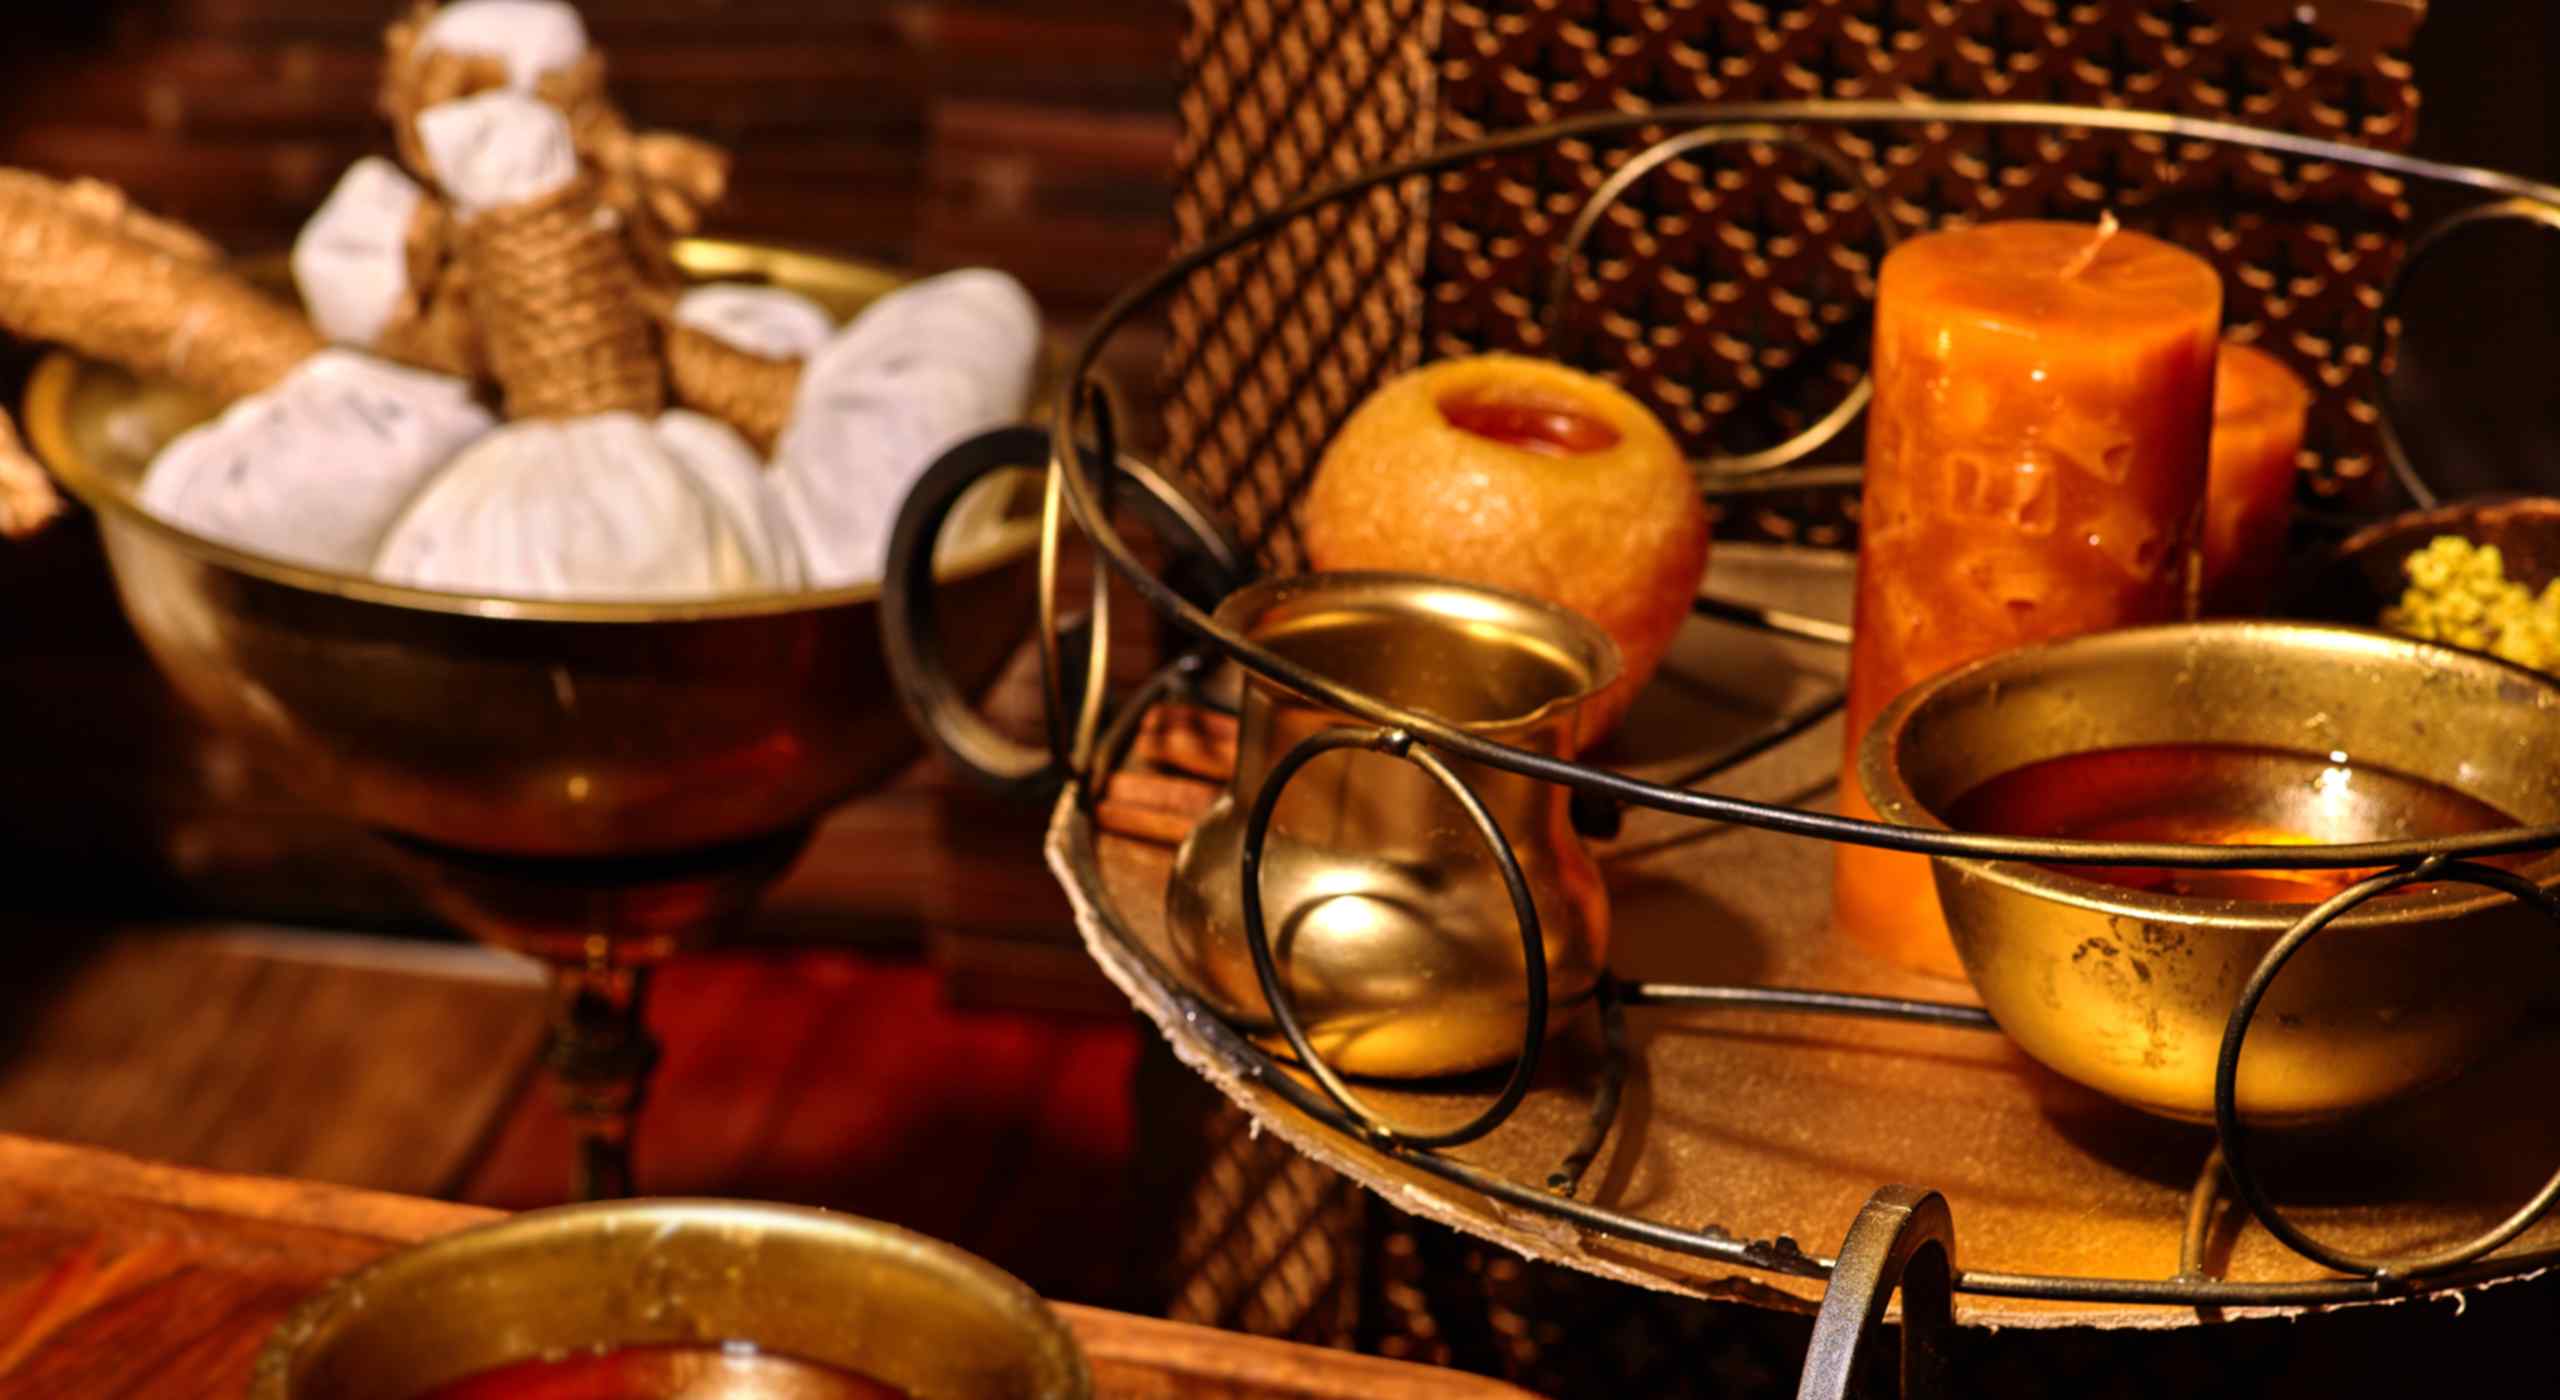 Ölschalen, Zitronenwickel, Kerzen für die Ayurveda-Massage